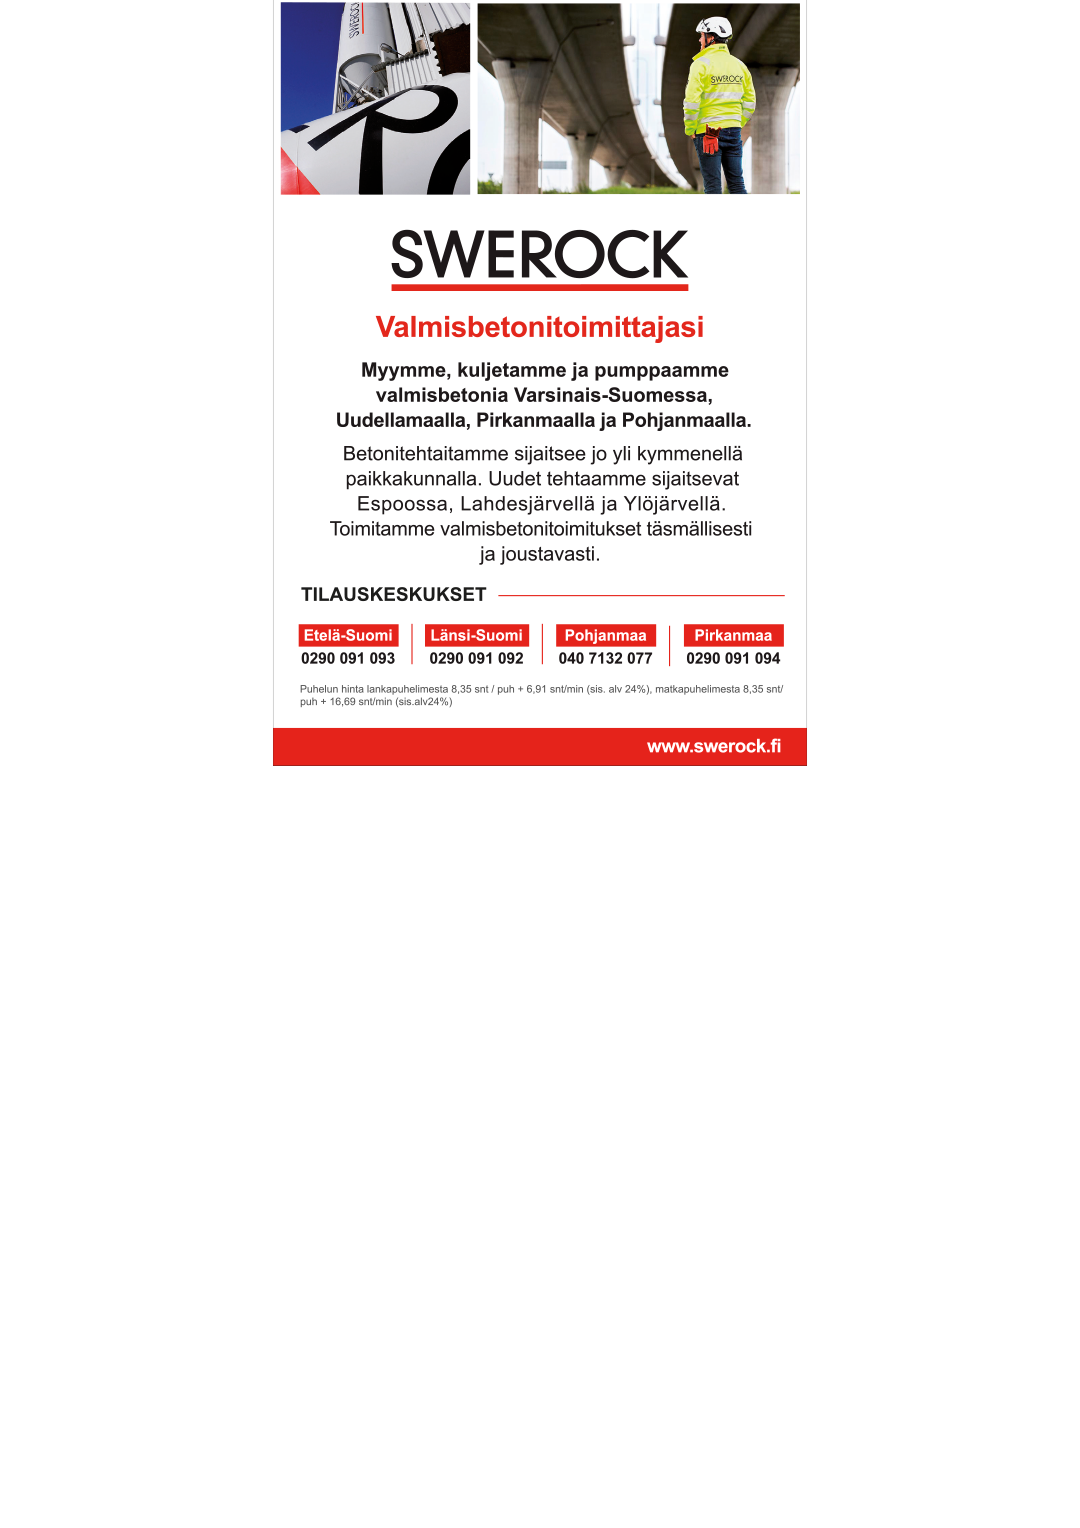 Swerock